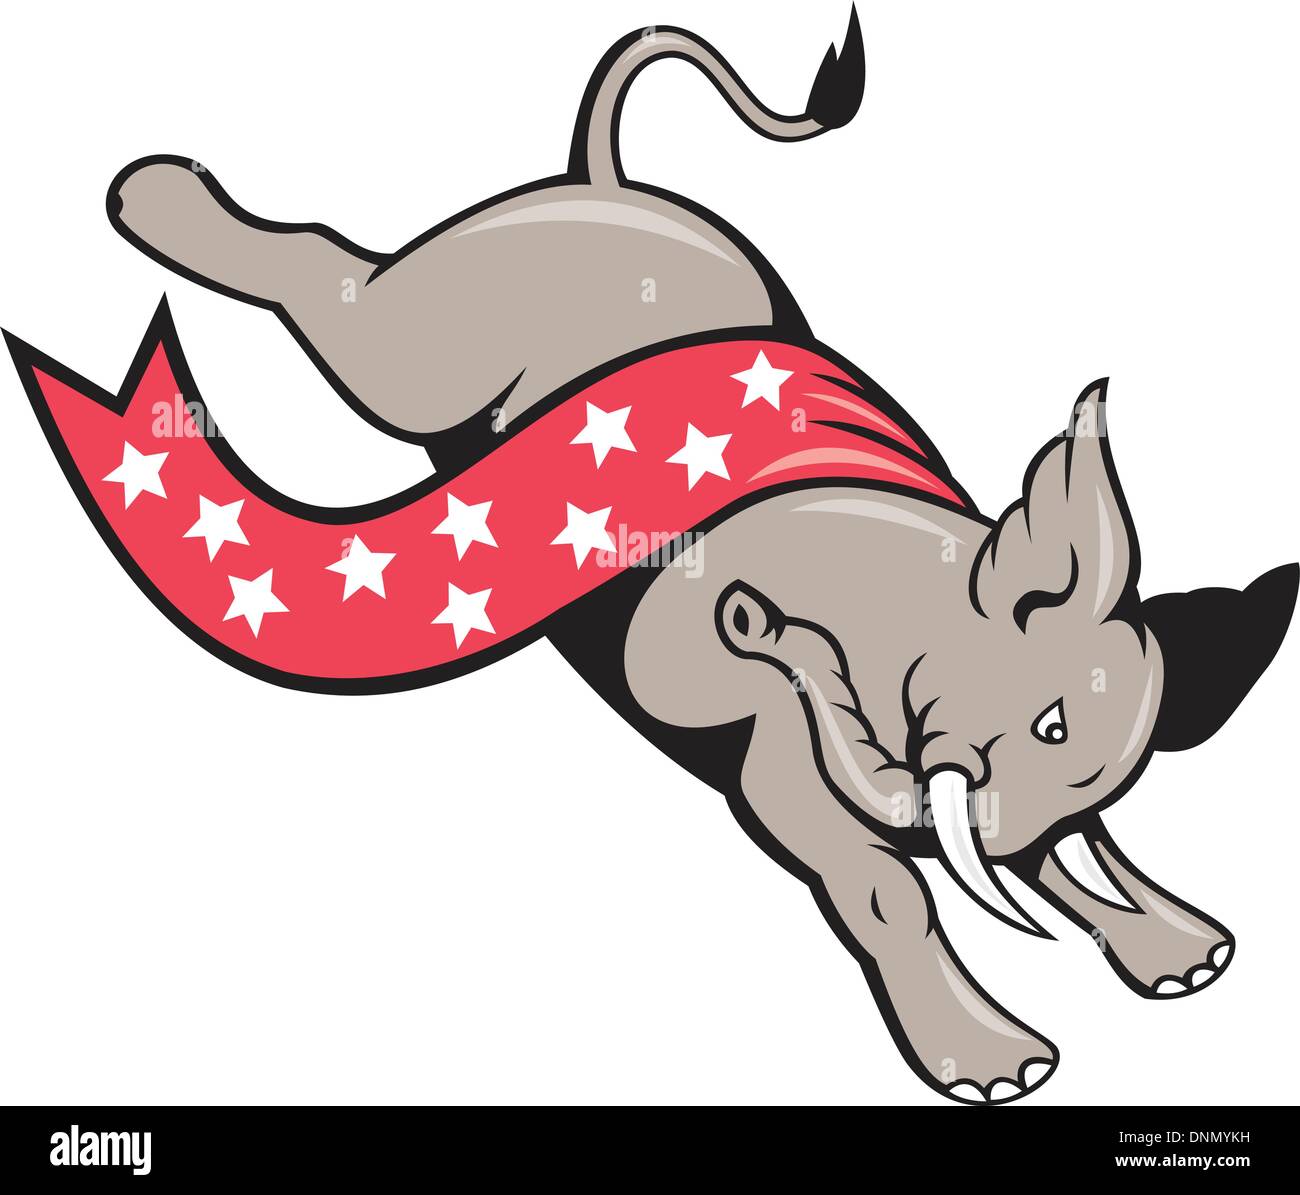 Cartoon illustration d'un saut éléphant sautant avec stars banner ruban comme mascotte républicaine isolées sur fond blanc. Illustration de Vecteur